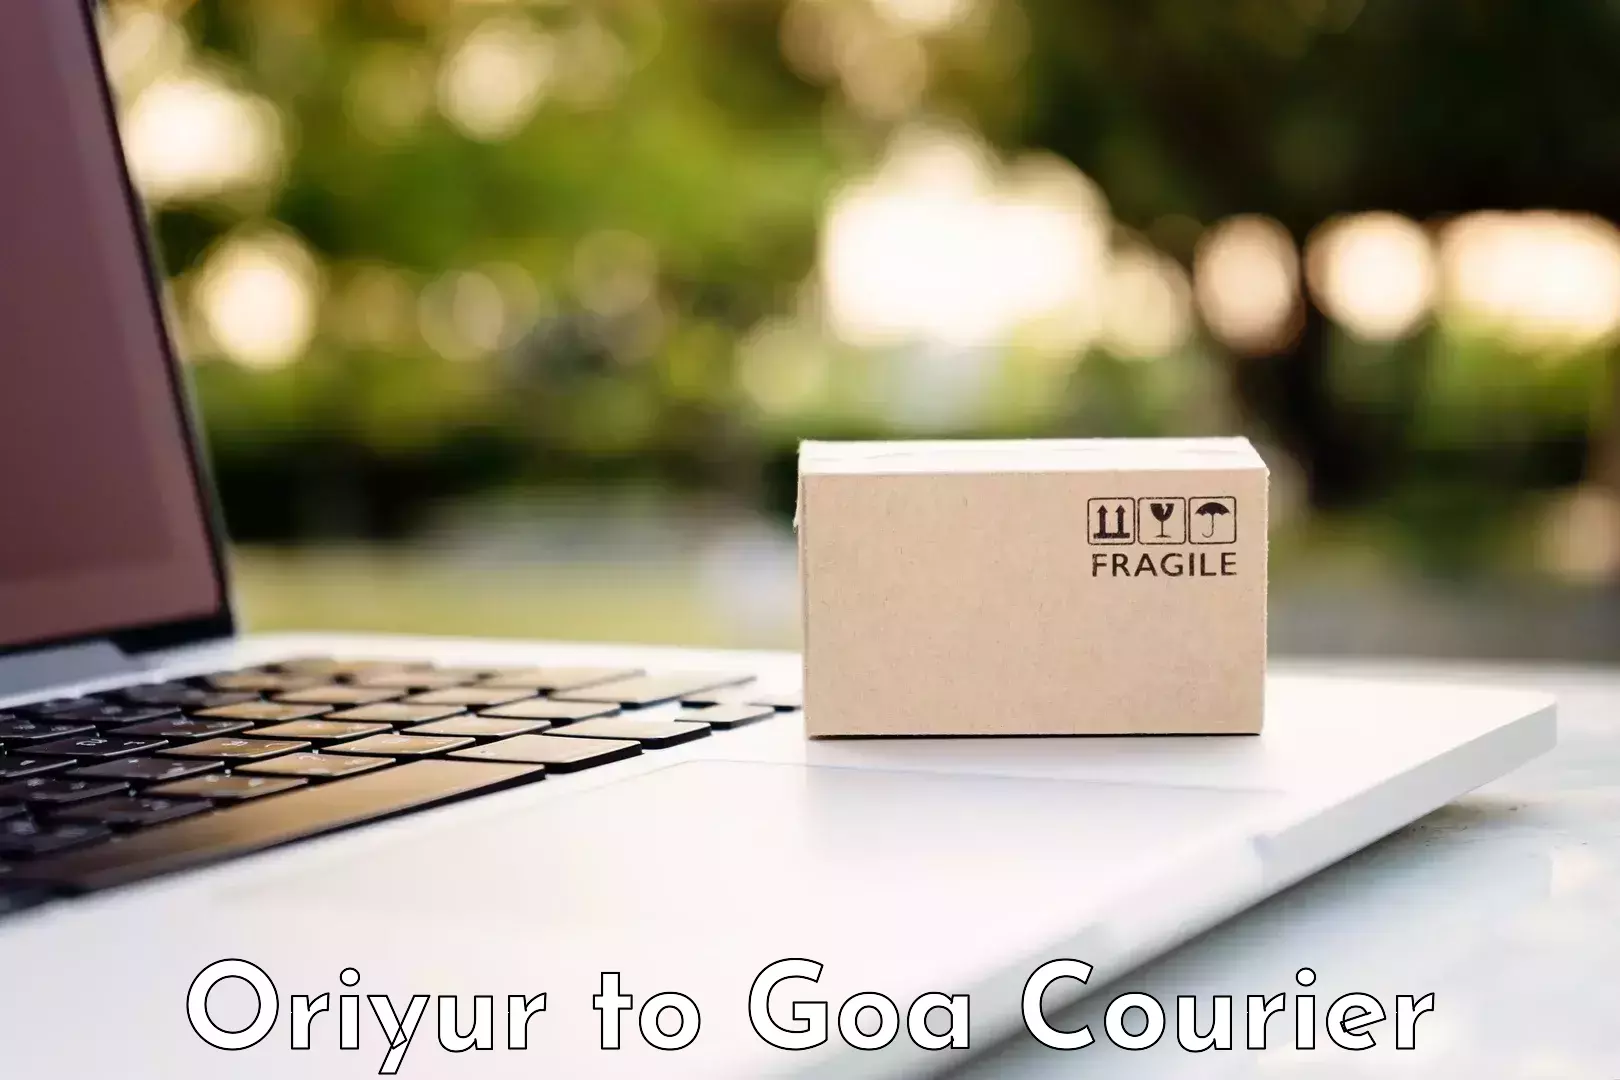 Professional moving company Oriyur to IIT Goa